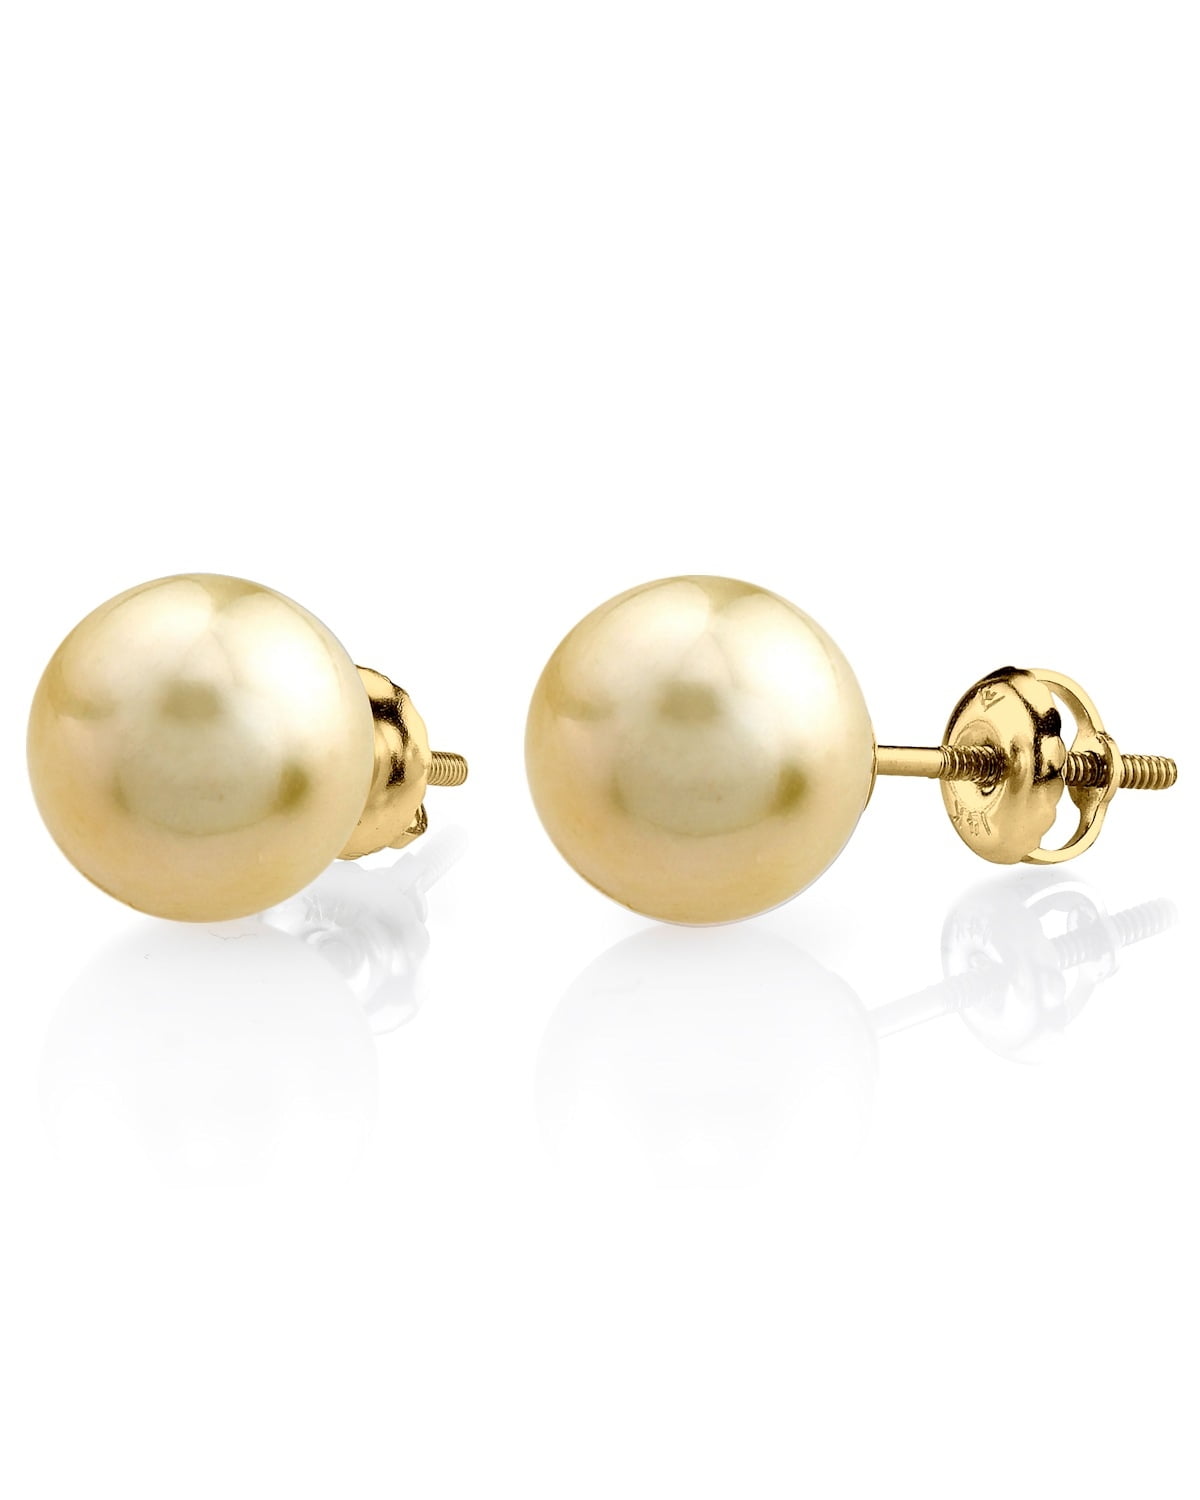 Classic Pearl Studs Earring in 14K Gold/Pearl, Women's by Gorjana